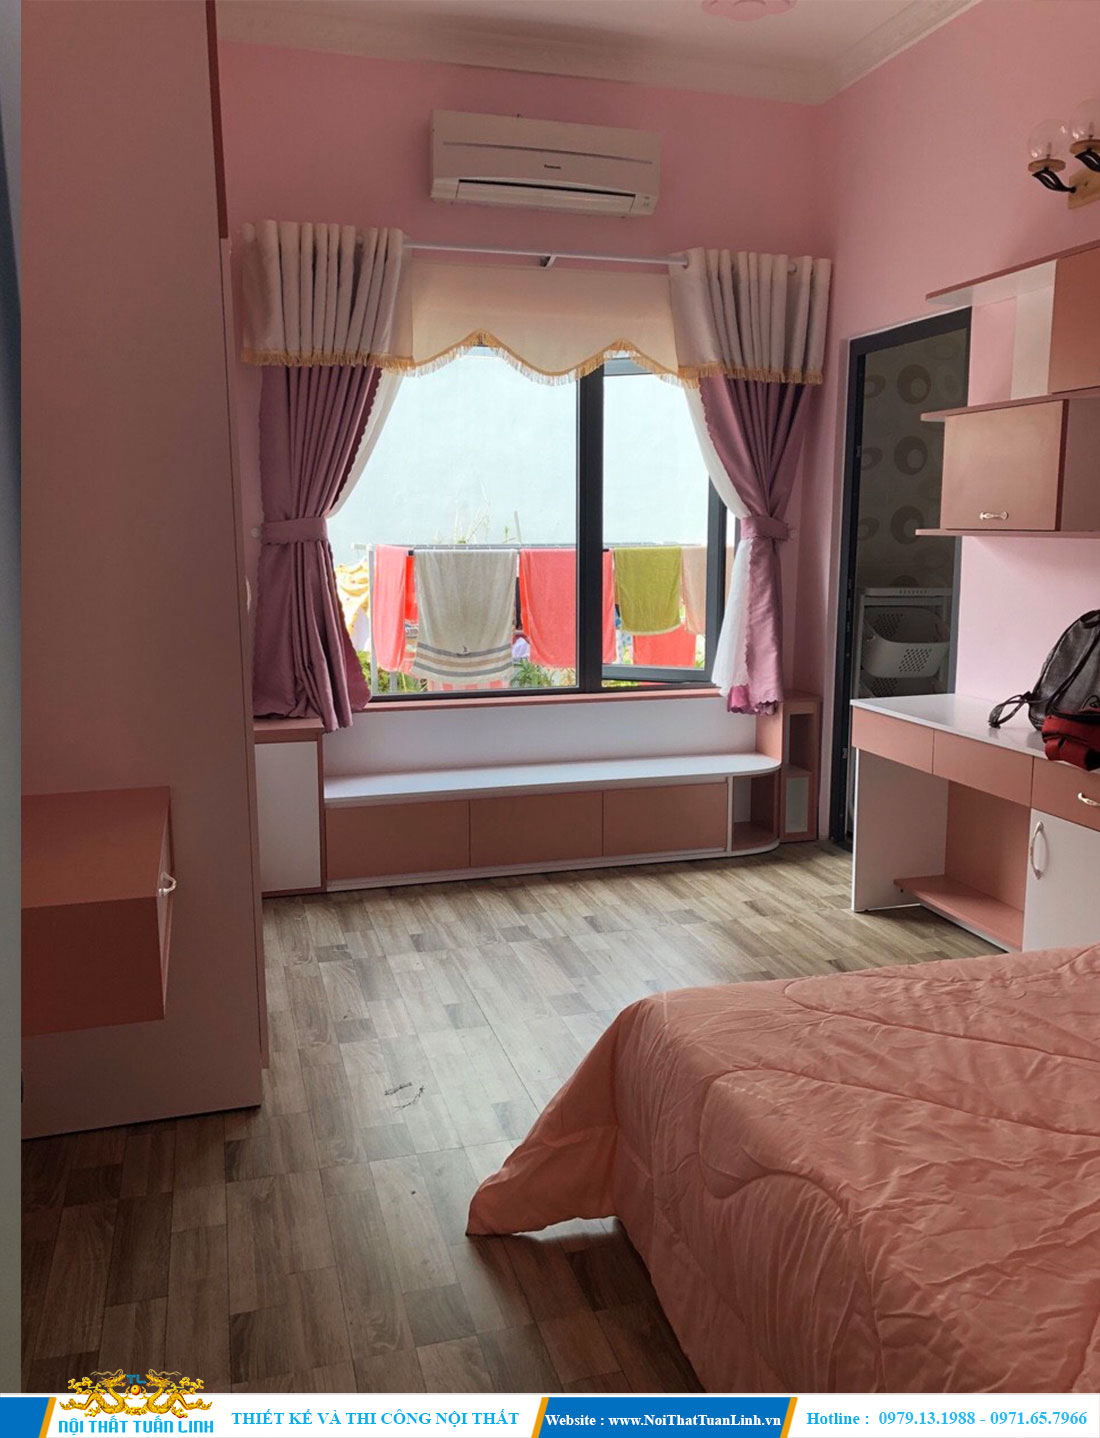 Thiết kế thi công nội thất phòng ngủ với tone màu hồng nhẹ nhàng 4